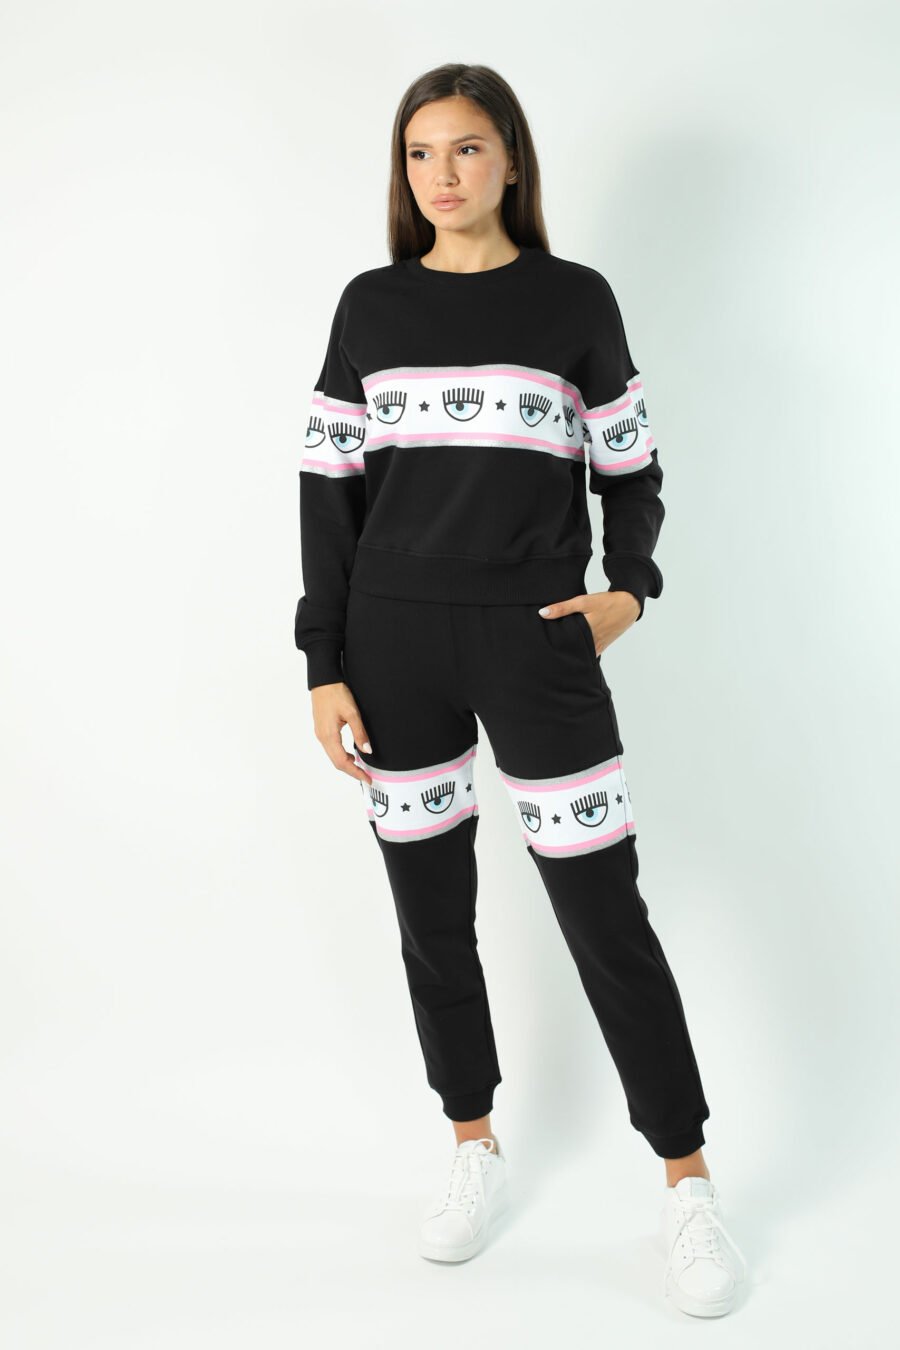 Schwarzes Sweatshirt mit Augenlogo auf Band - Fotos 2786